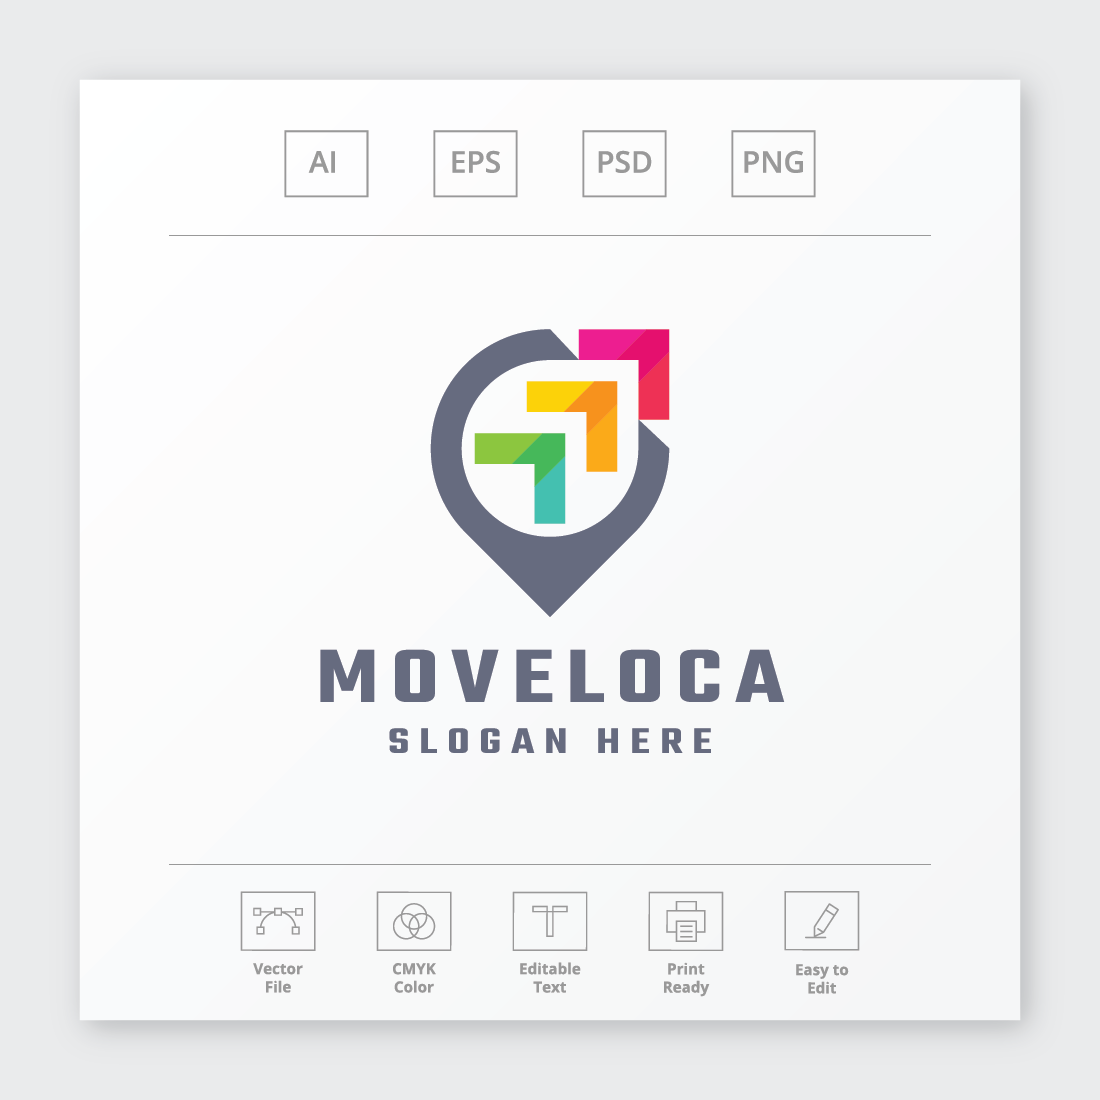 Move Location Logo cover image.